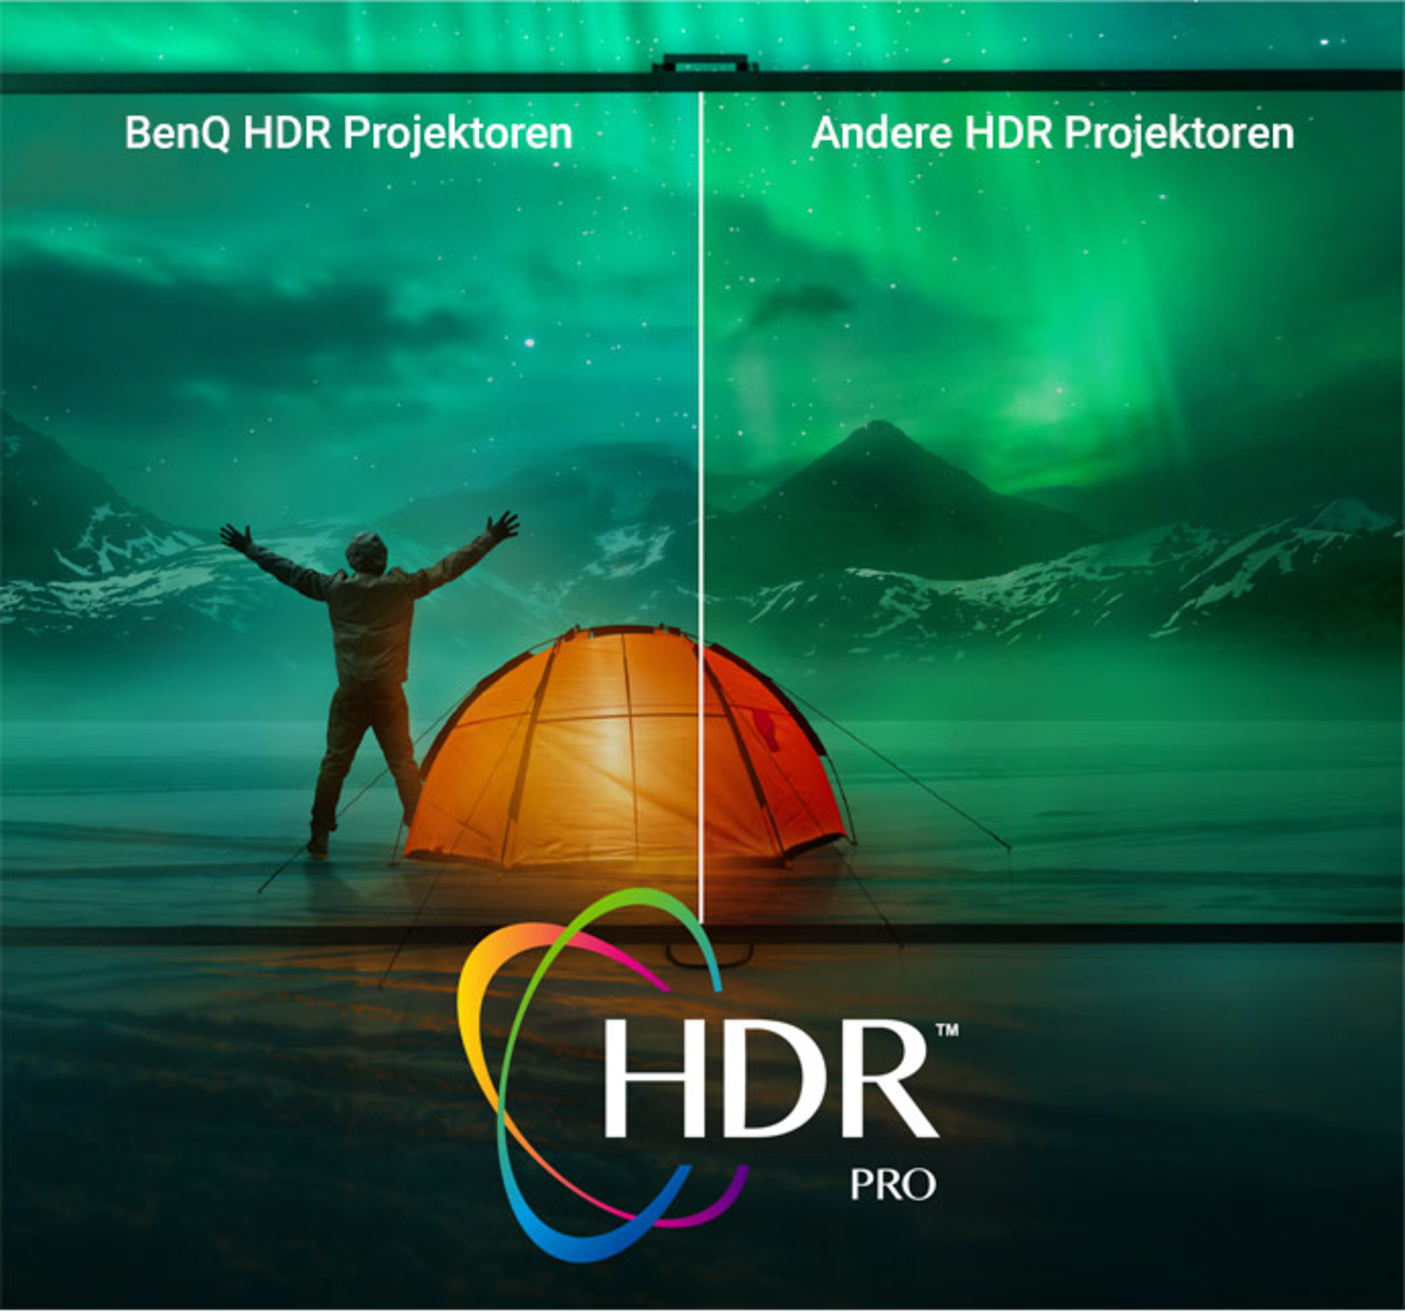  Extrem realistische Videoqualität mit HDR Pro 